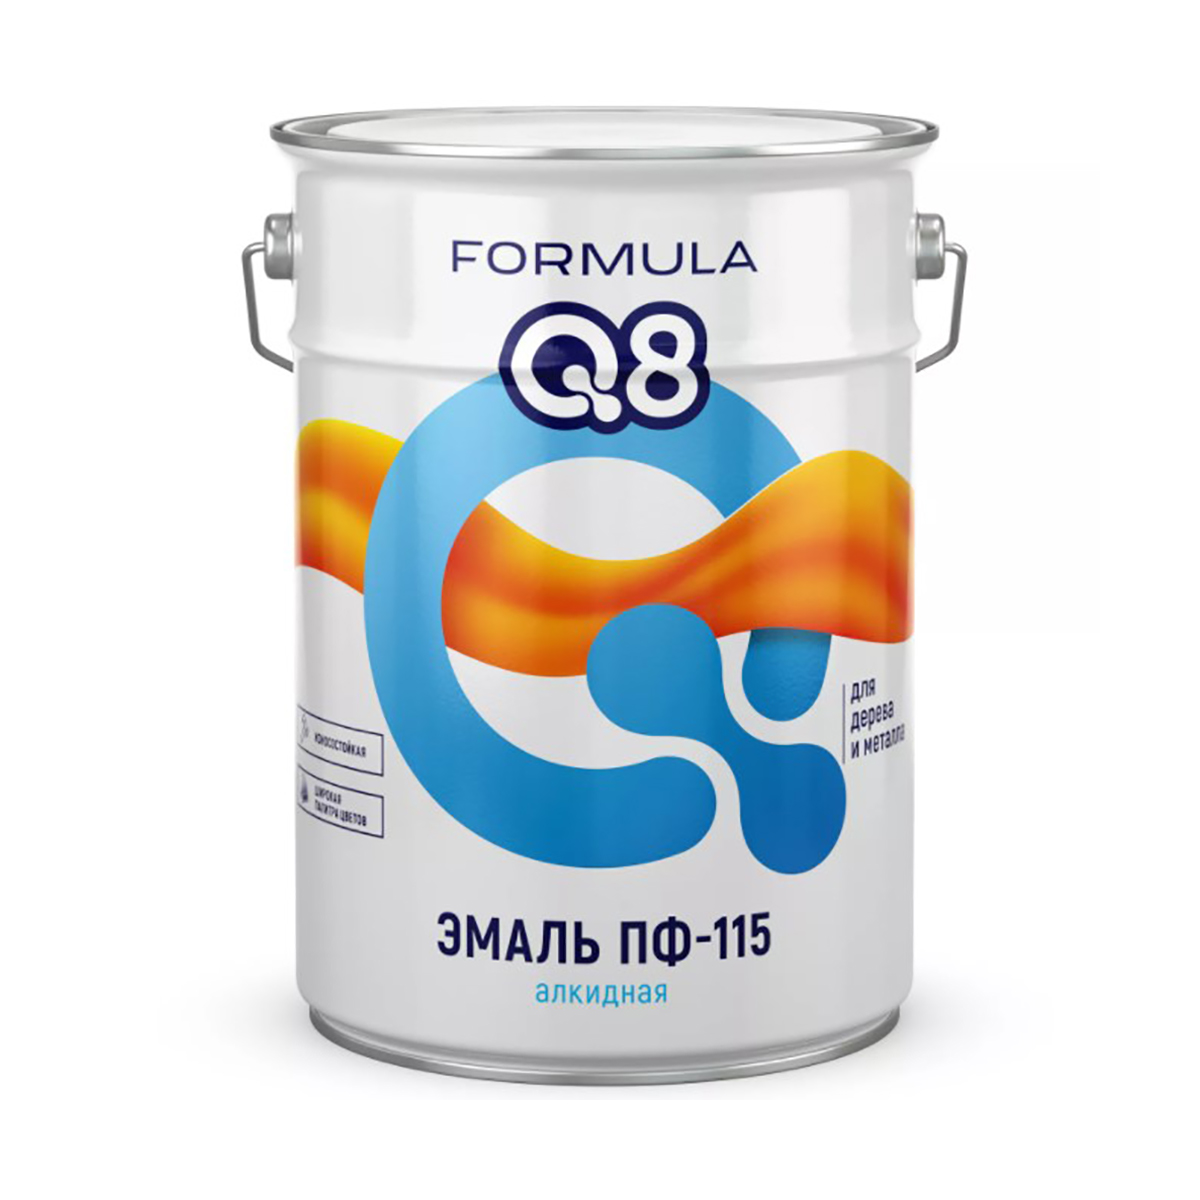 фото Эмаль пф-115 алкидная formula q8, глянцевая, 20 кг, белая